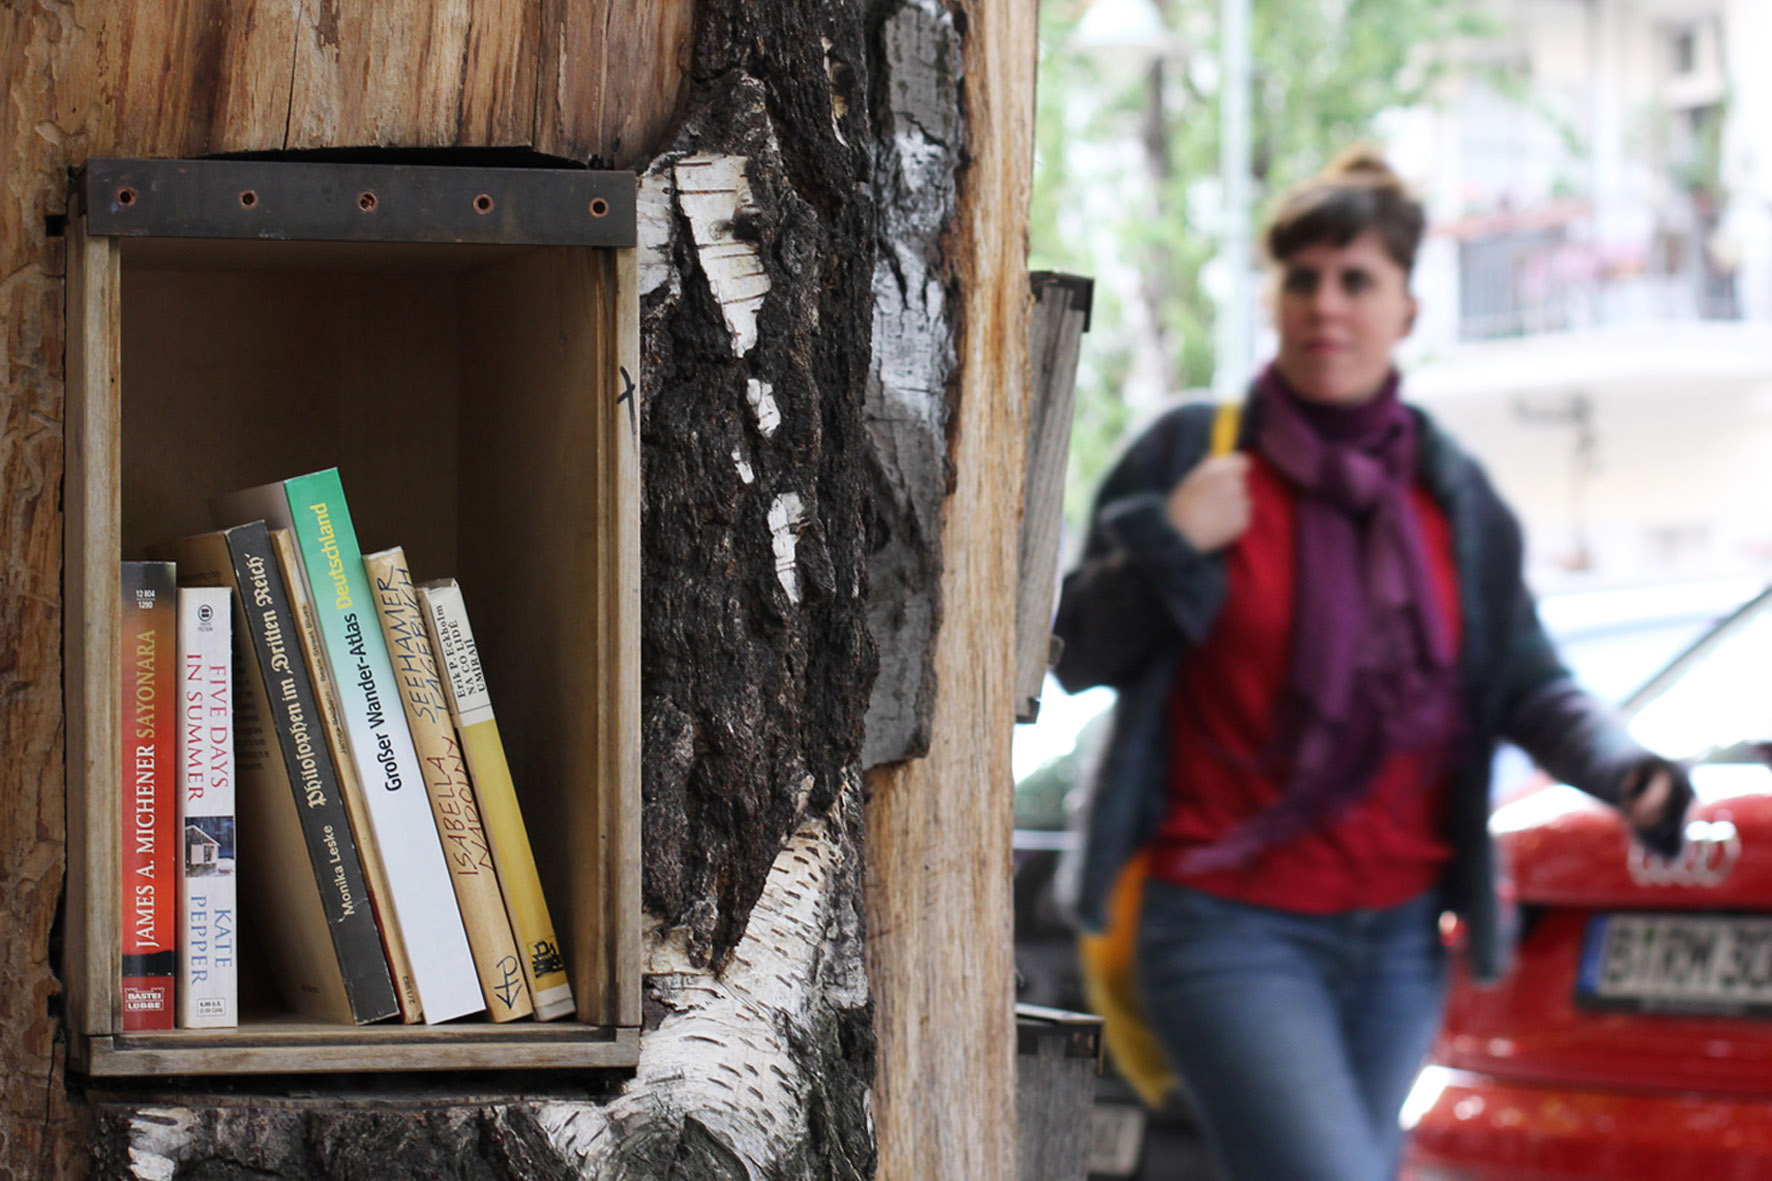 Eine Frau läuft an dem Bücherwald vorbei - Eine Bibliothek mit Regalen, die in Stämme geschnitzt sind, die zusammen verschraubt wurden, um einem Baum zu ähneln - auf der Sredzkistrasse in Berlin Prenzlauer Berg